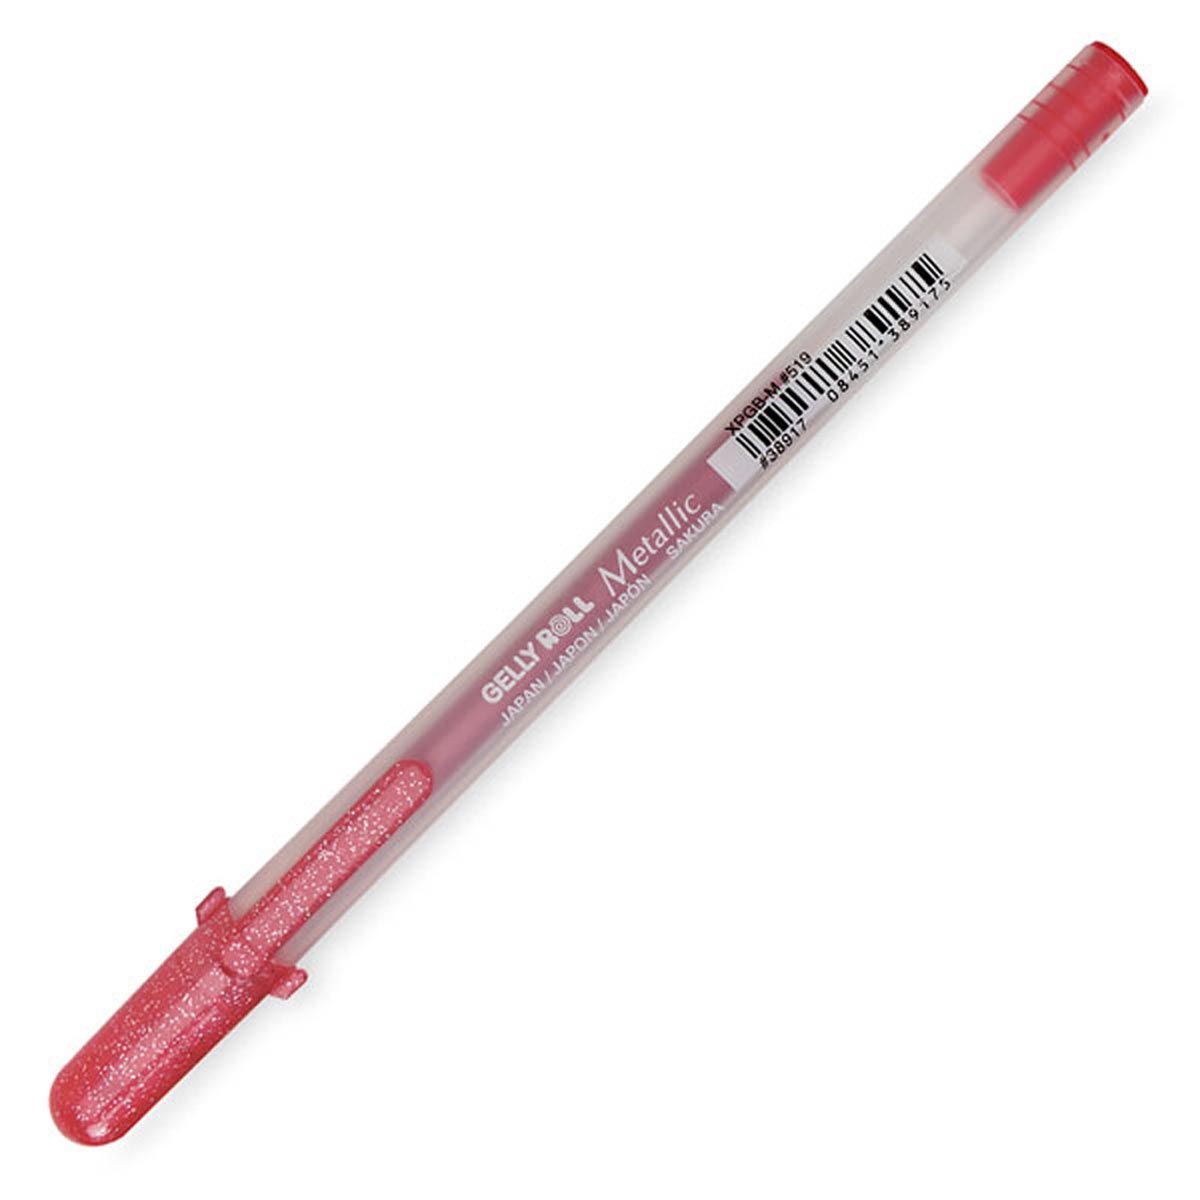 Gelly Roll Metallic Gel Pen - Red